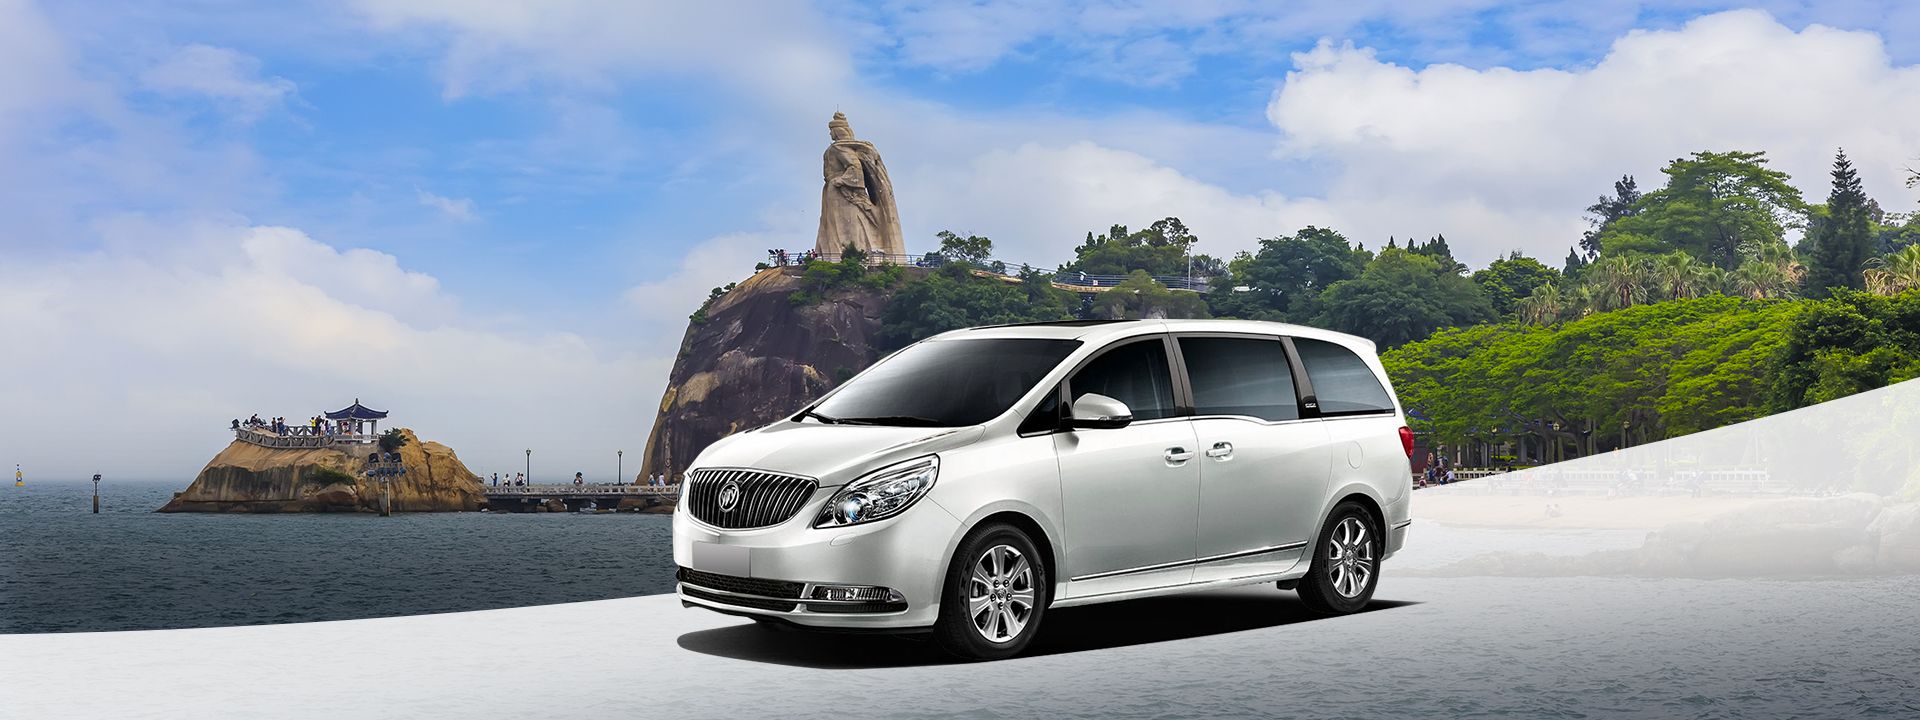 Imagen del tour: Xiamen Private Car Charter